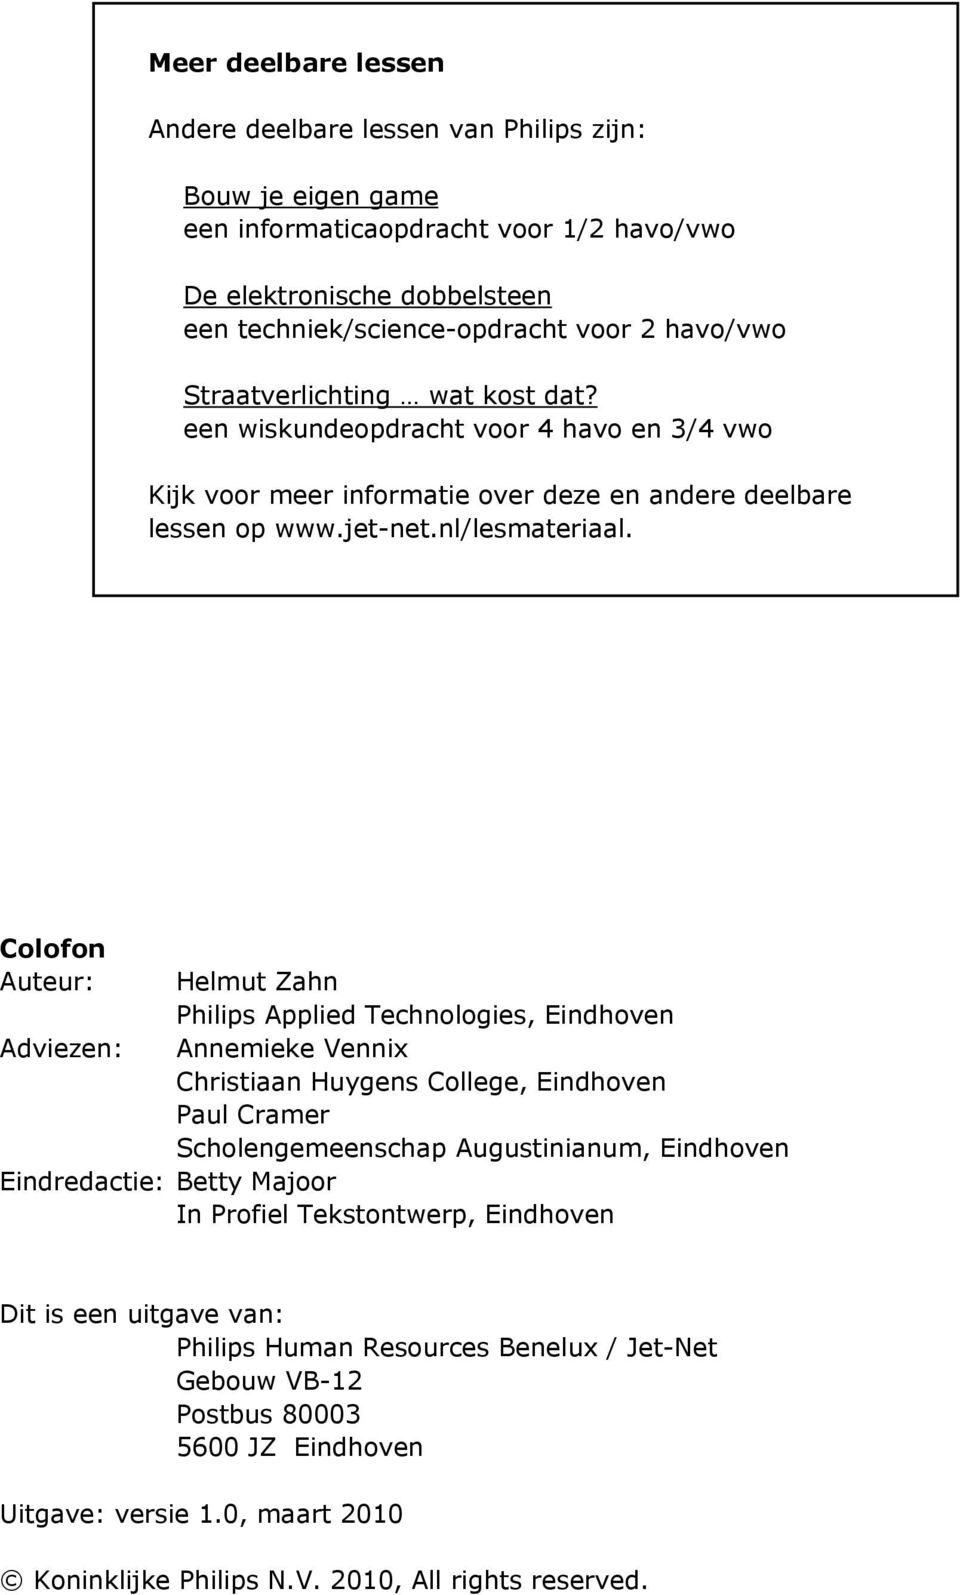 Colofon Auteur: Adviezen: Helmut Zahn Philips Applied Technologies, Eindhoven Annemieke Vennix Christiaan Huygens College, Eindhoven Paul Cramer Scholengemeenschap Augustinianum, Eindhoven